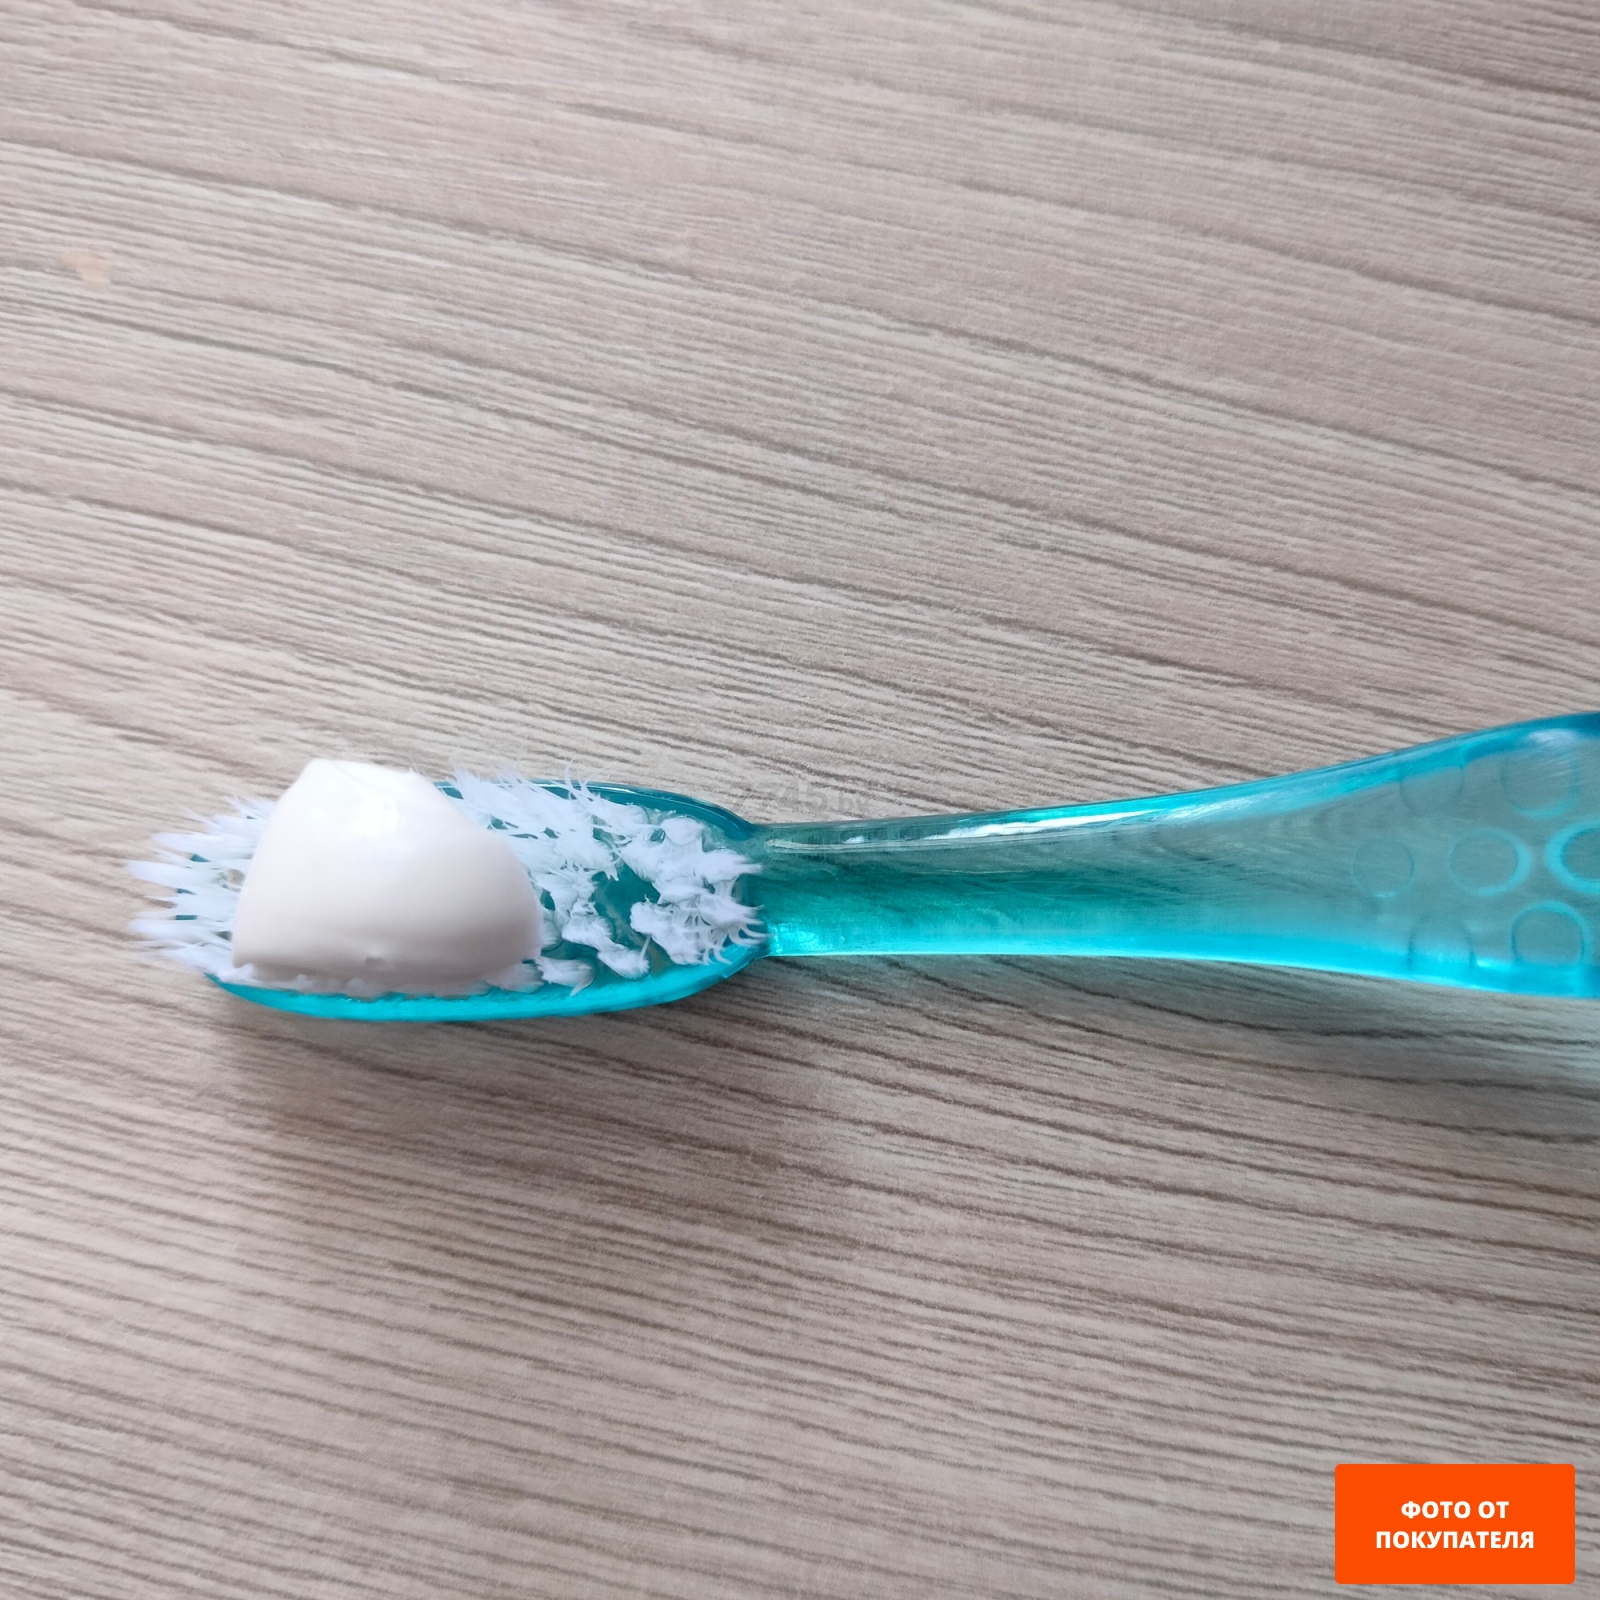 Зубная паста COLGATE Крепкие зубы Свежее дыхание 100 мл (7891024129937)